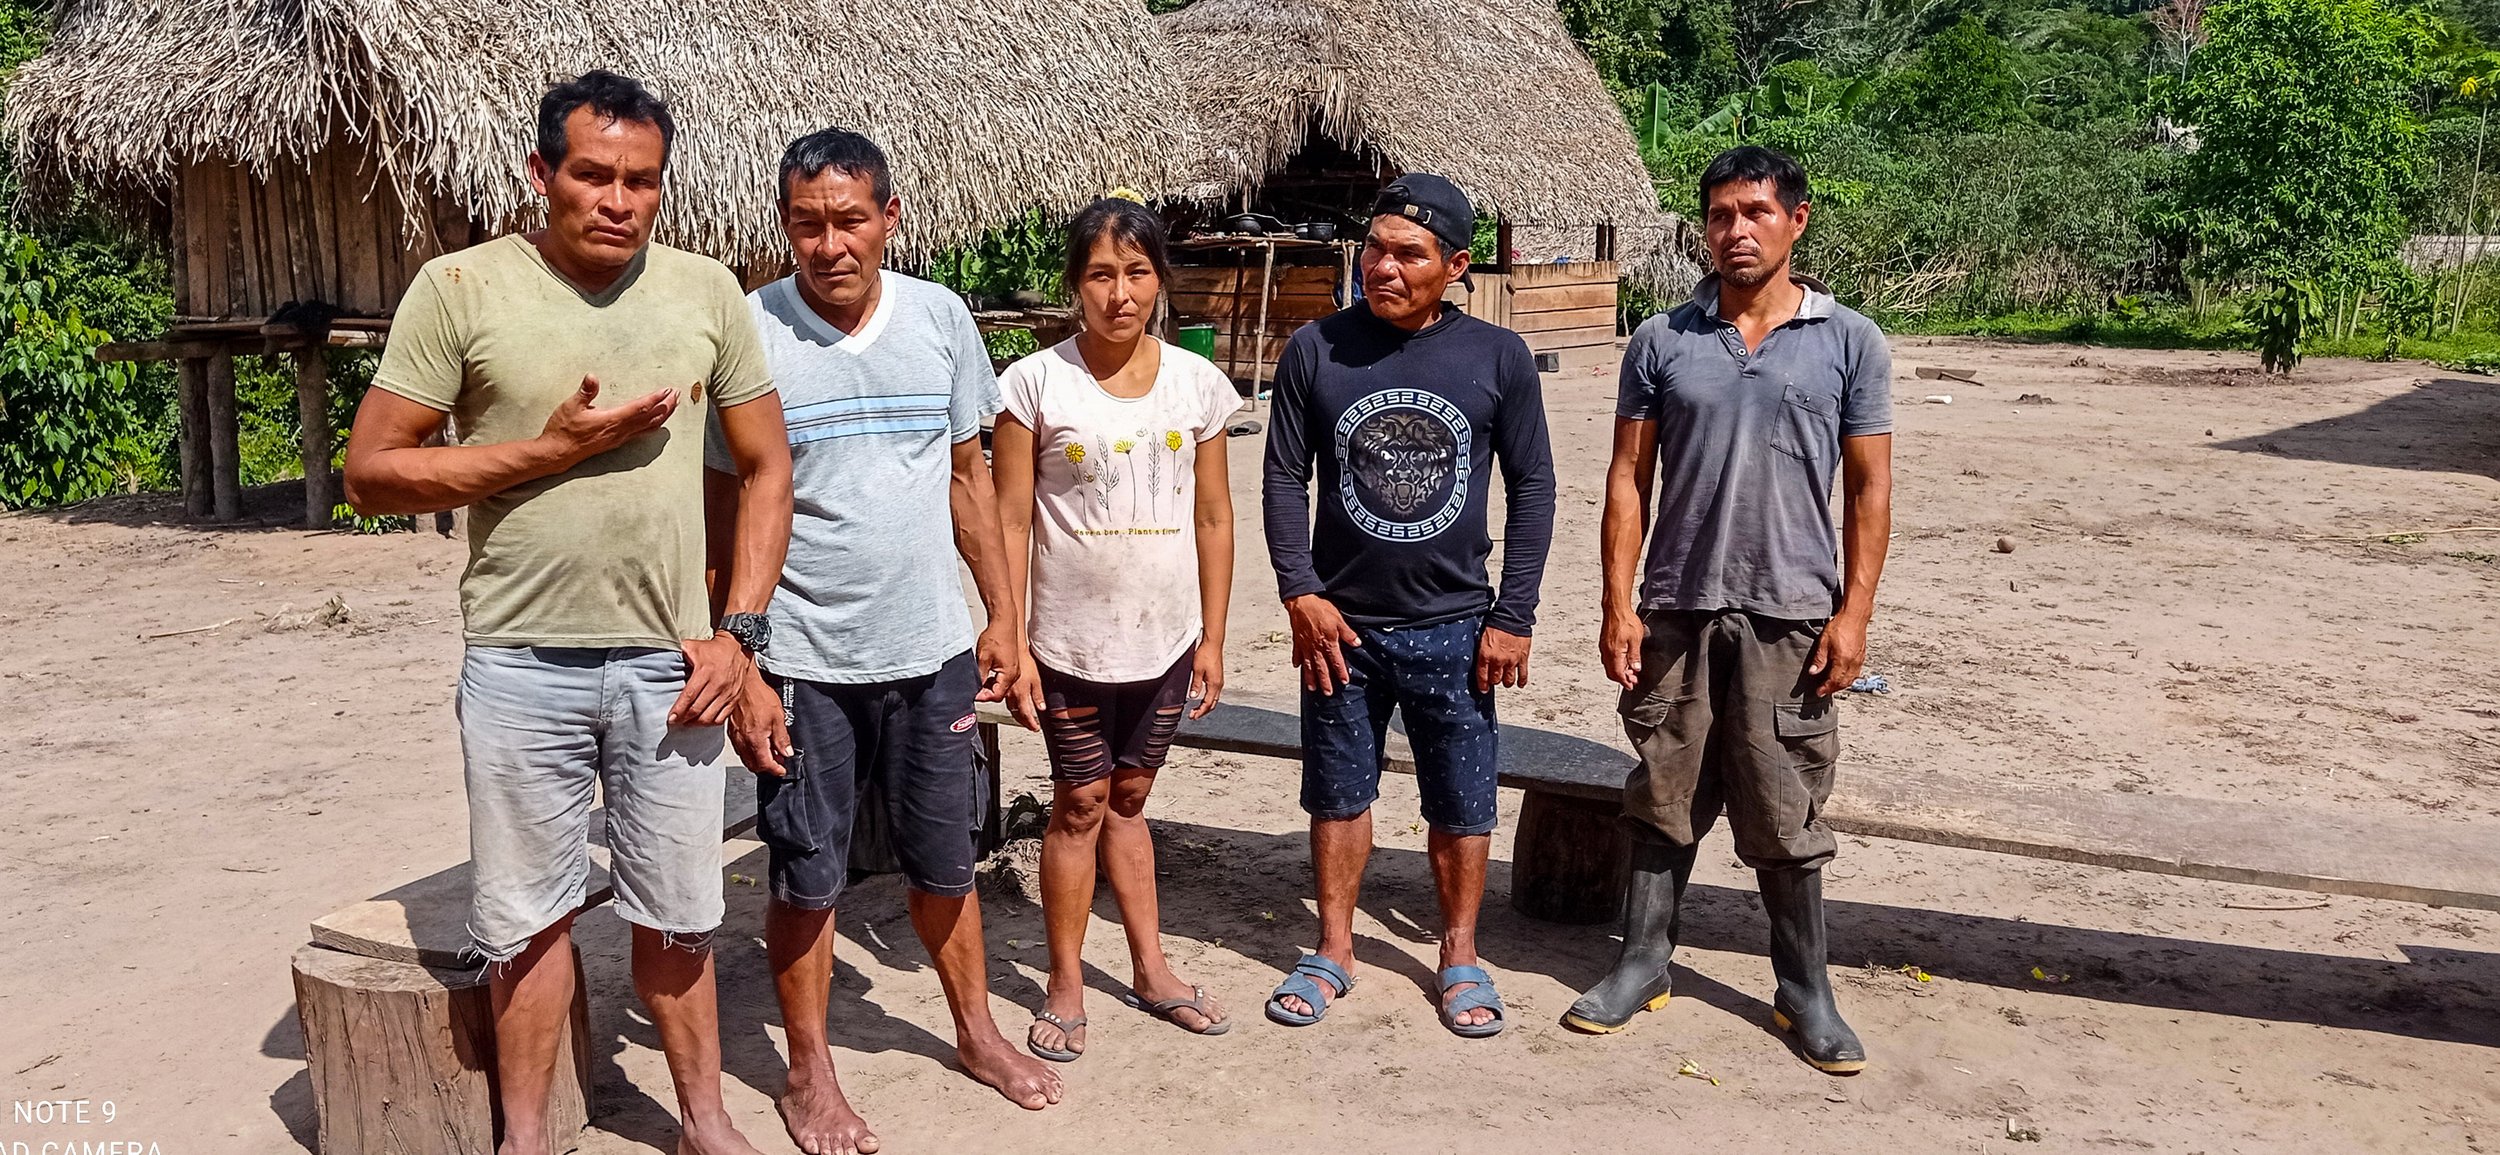   Miembros de Alto Esperanza, una comunidad Amahuaca en contacto inicial que está luchando por sus derechos territoriales.  